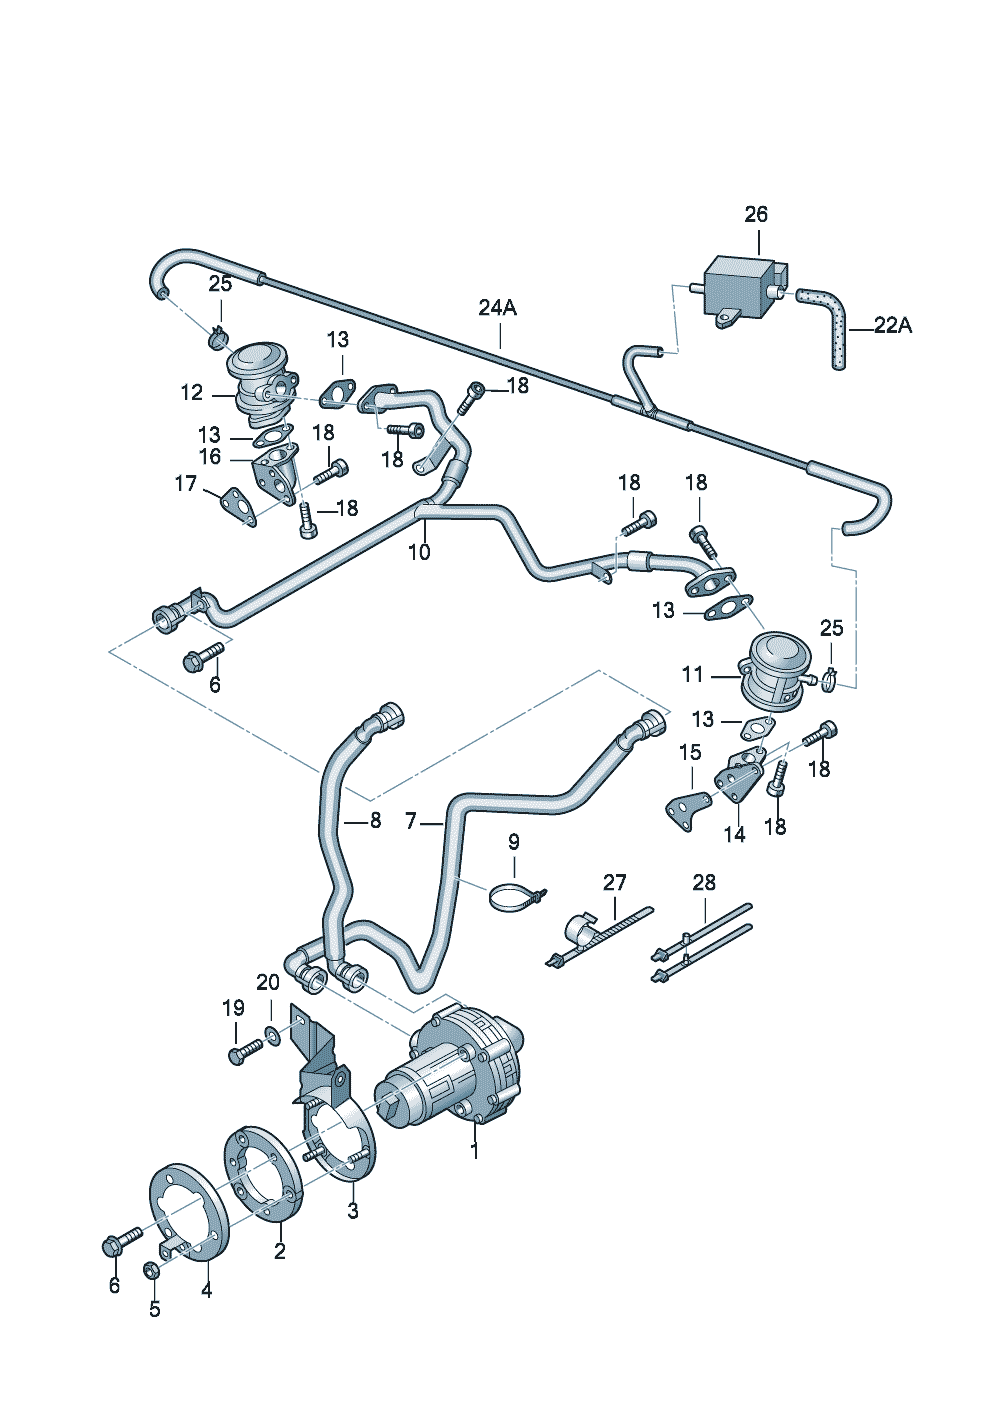 Secondary air pumpkombi valve 2.4ltr. - Audi A6/Avant - a6